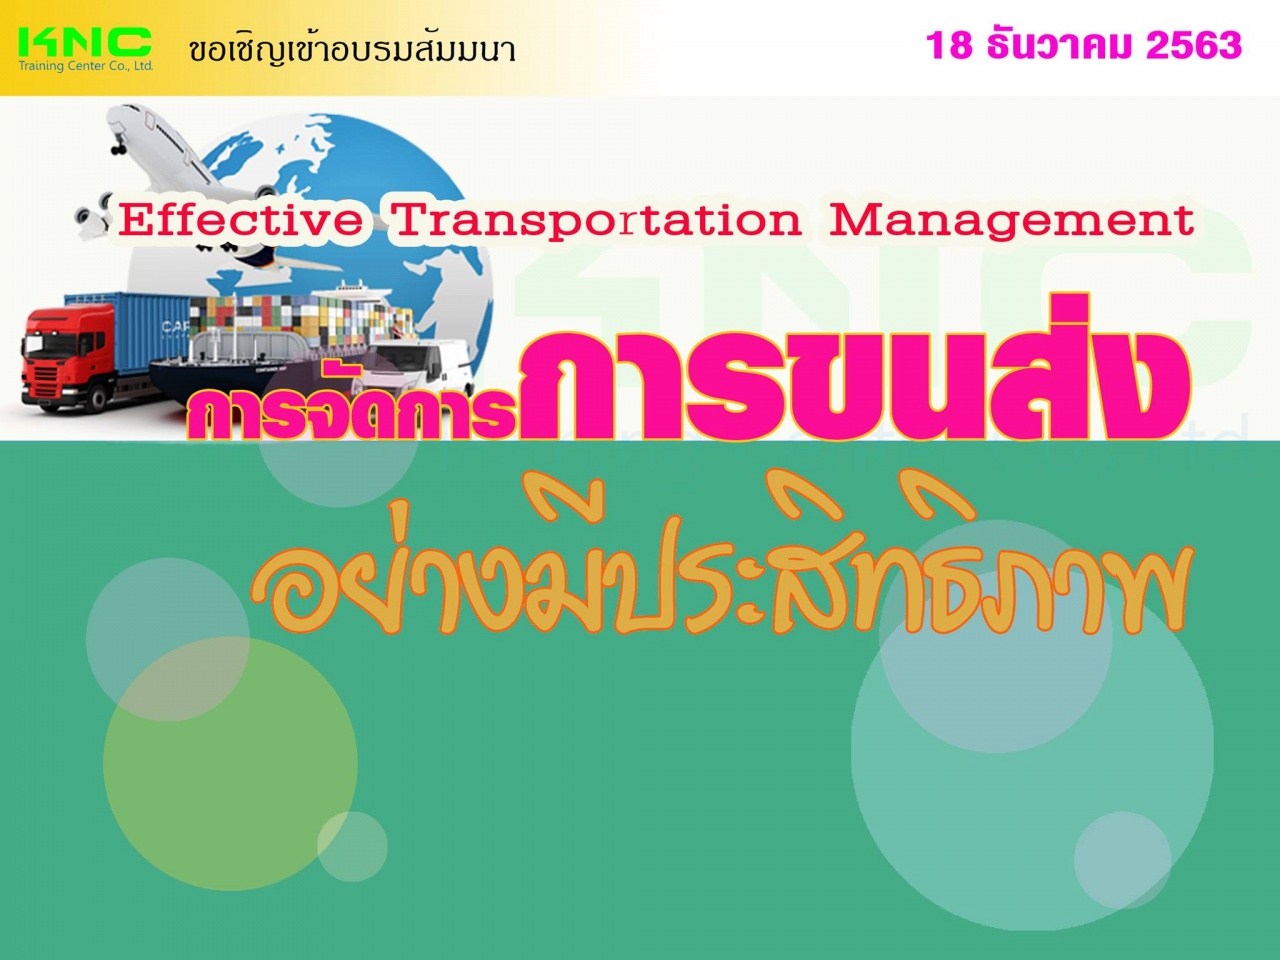 การจัดการการขนส่งอย่างมีประสิทธิภาพ (Effective Transportation Management)